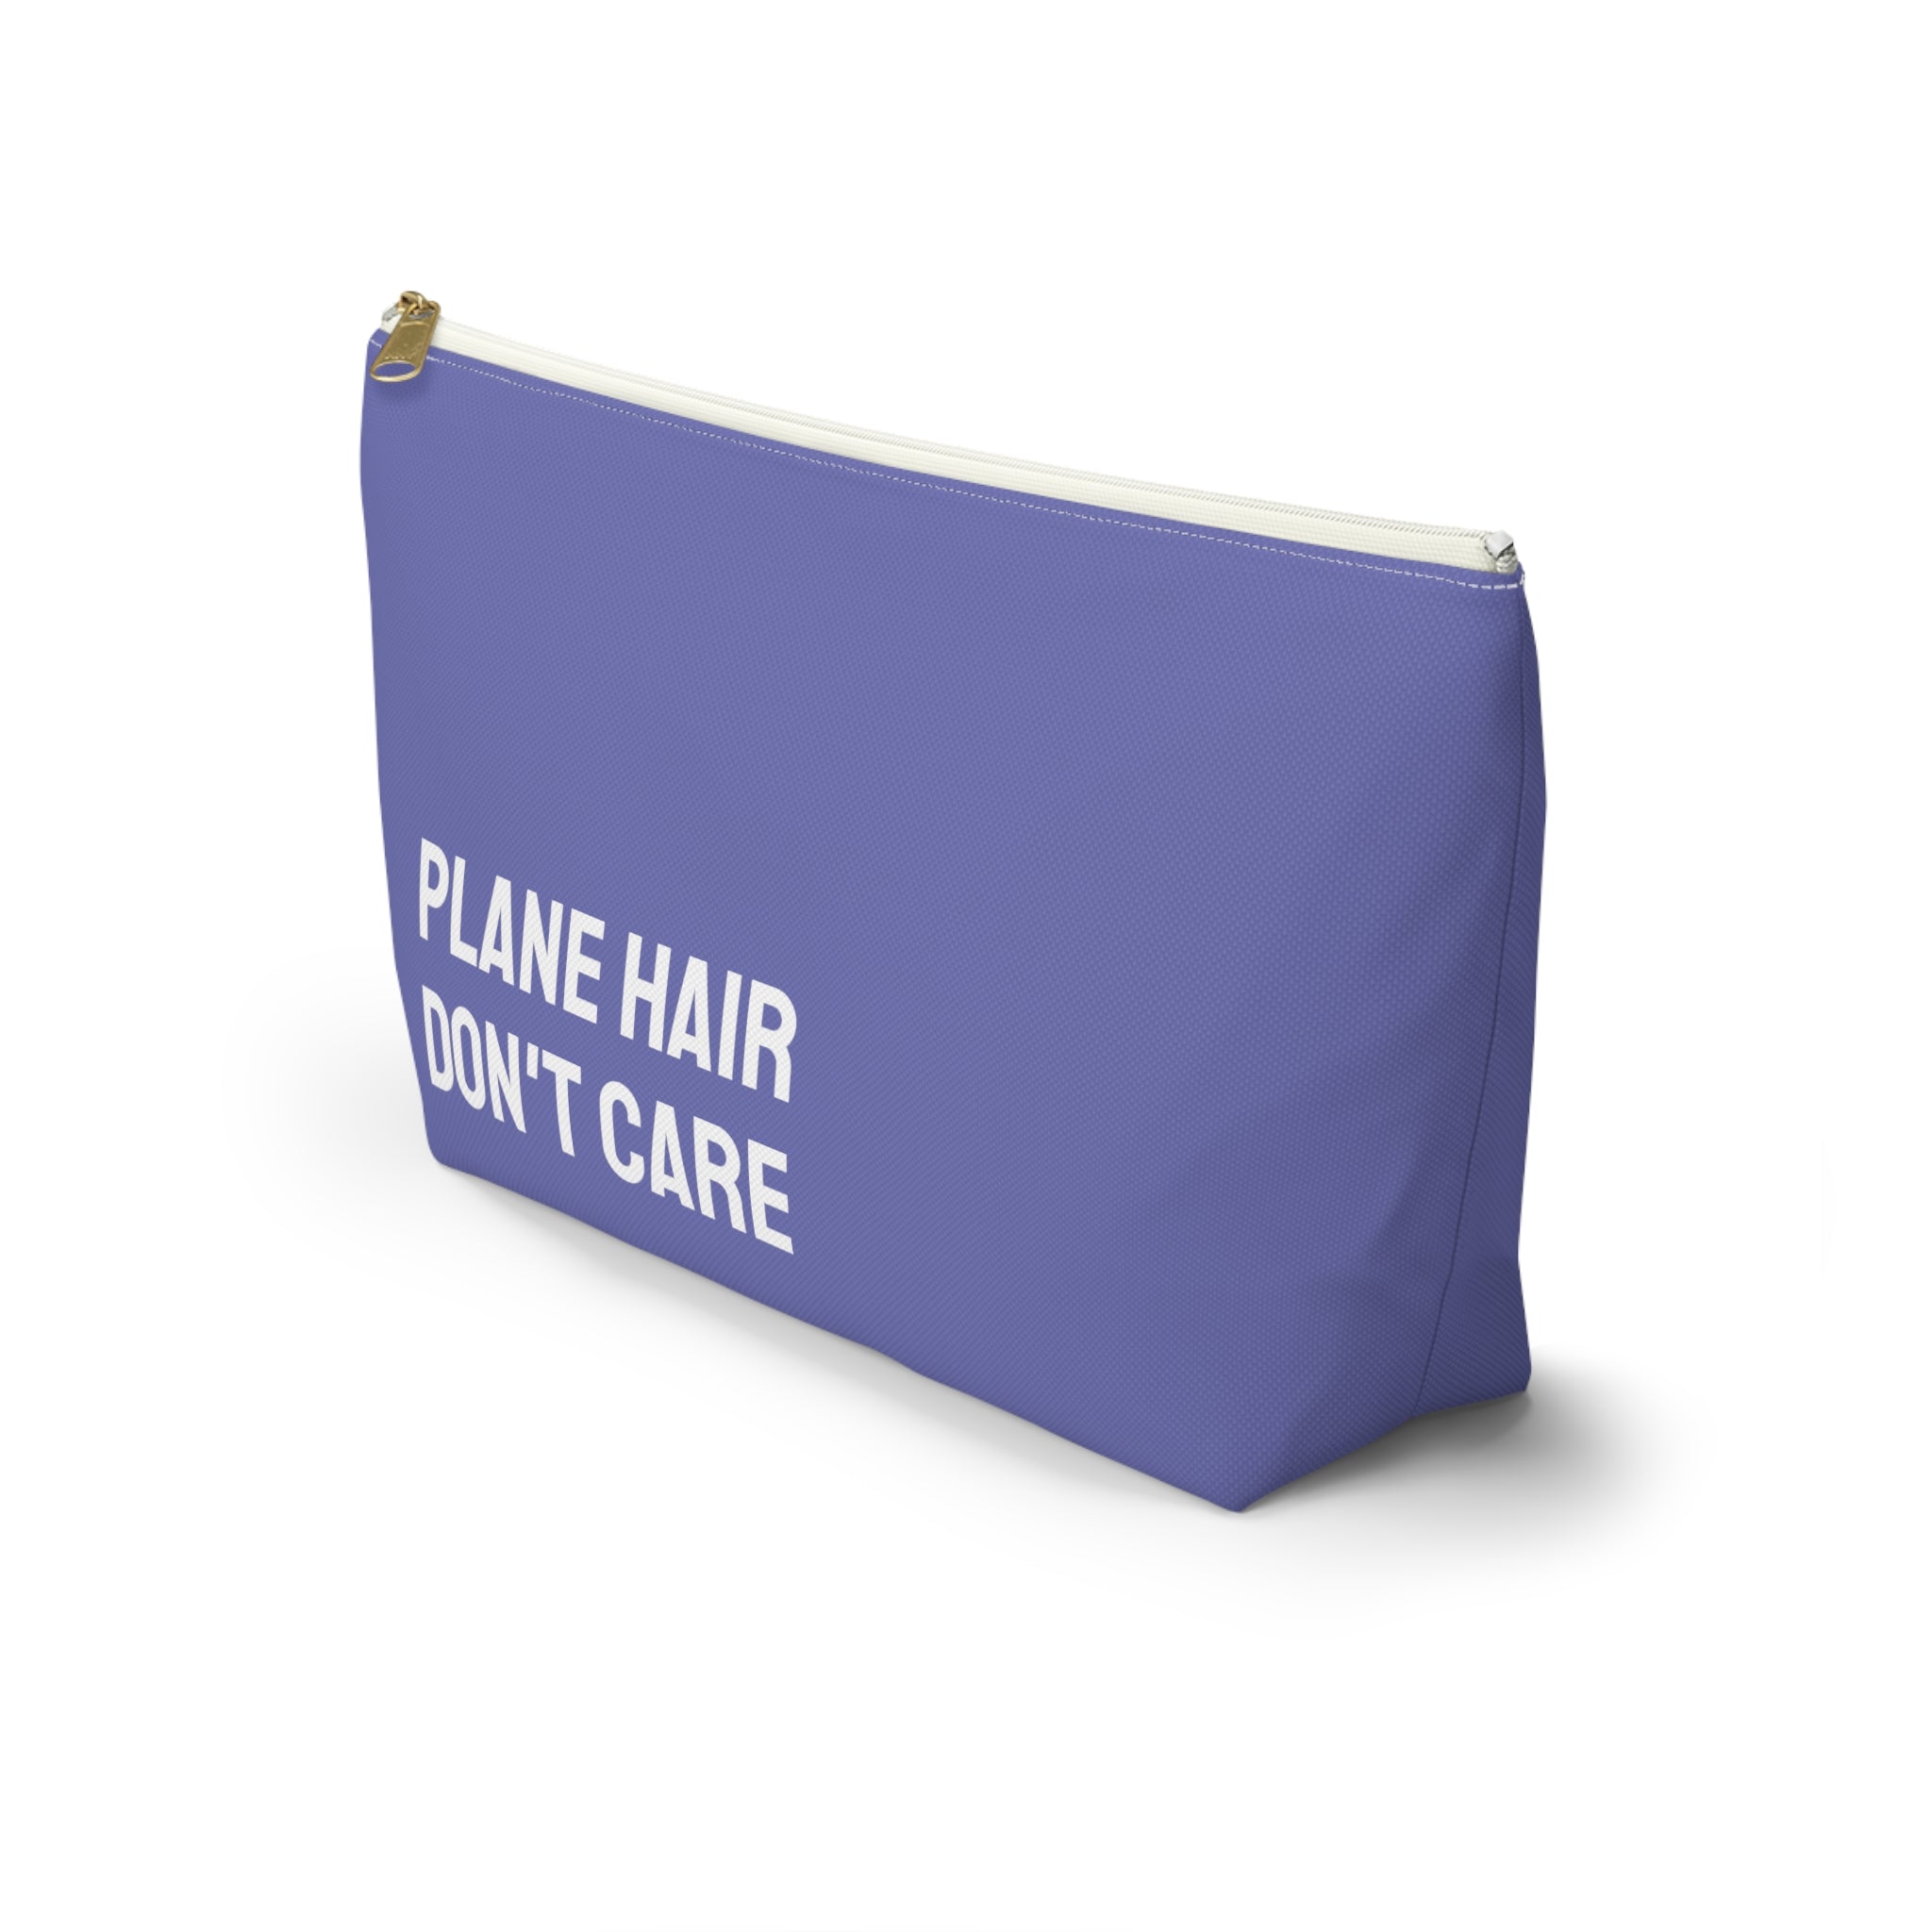 Plane hair don't care Pouch (Purple)